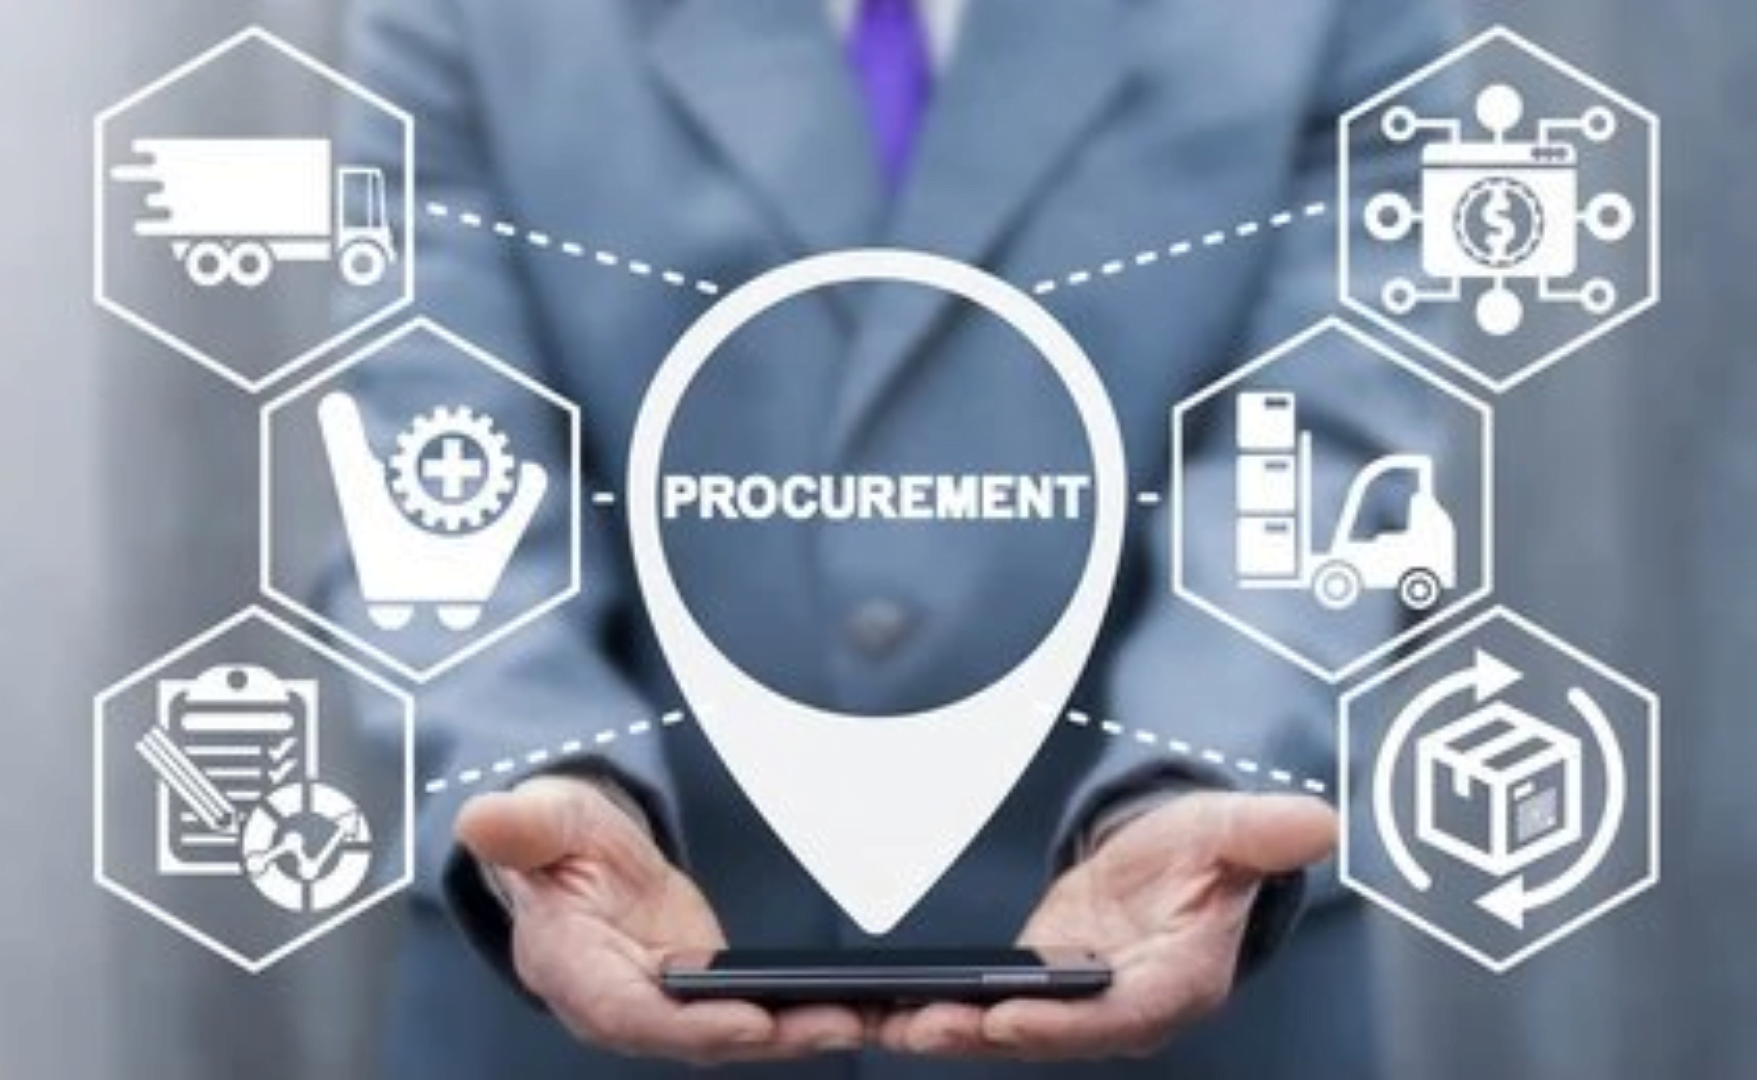 Procurement management software